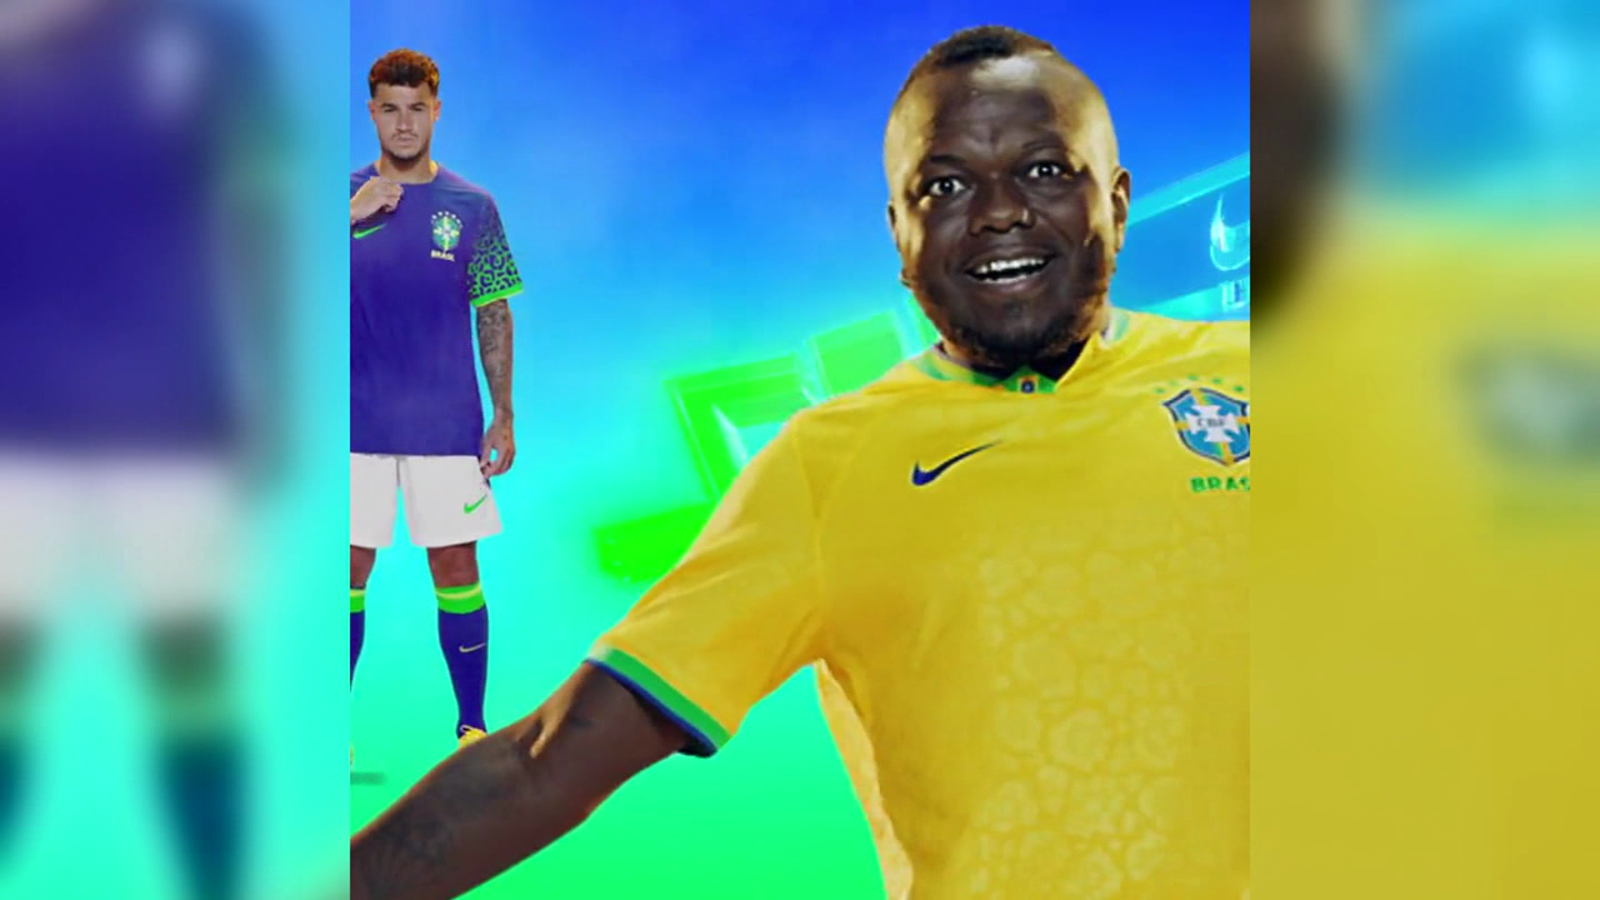 La nueva indumentaria de Brasil para el Mundial de Qatar 2022